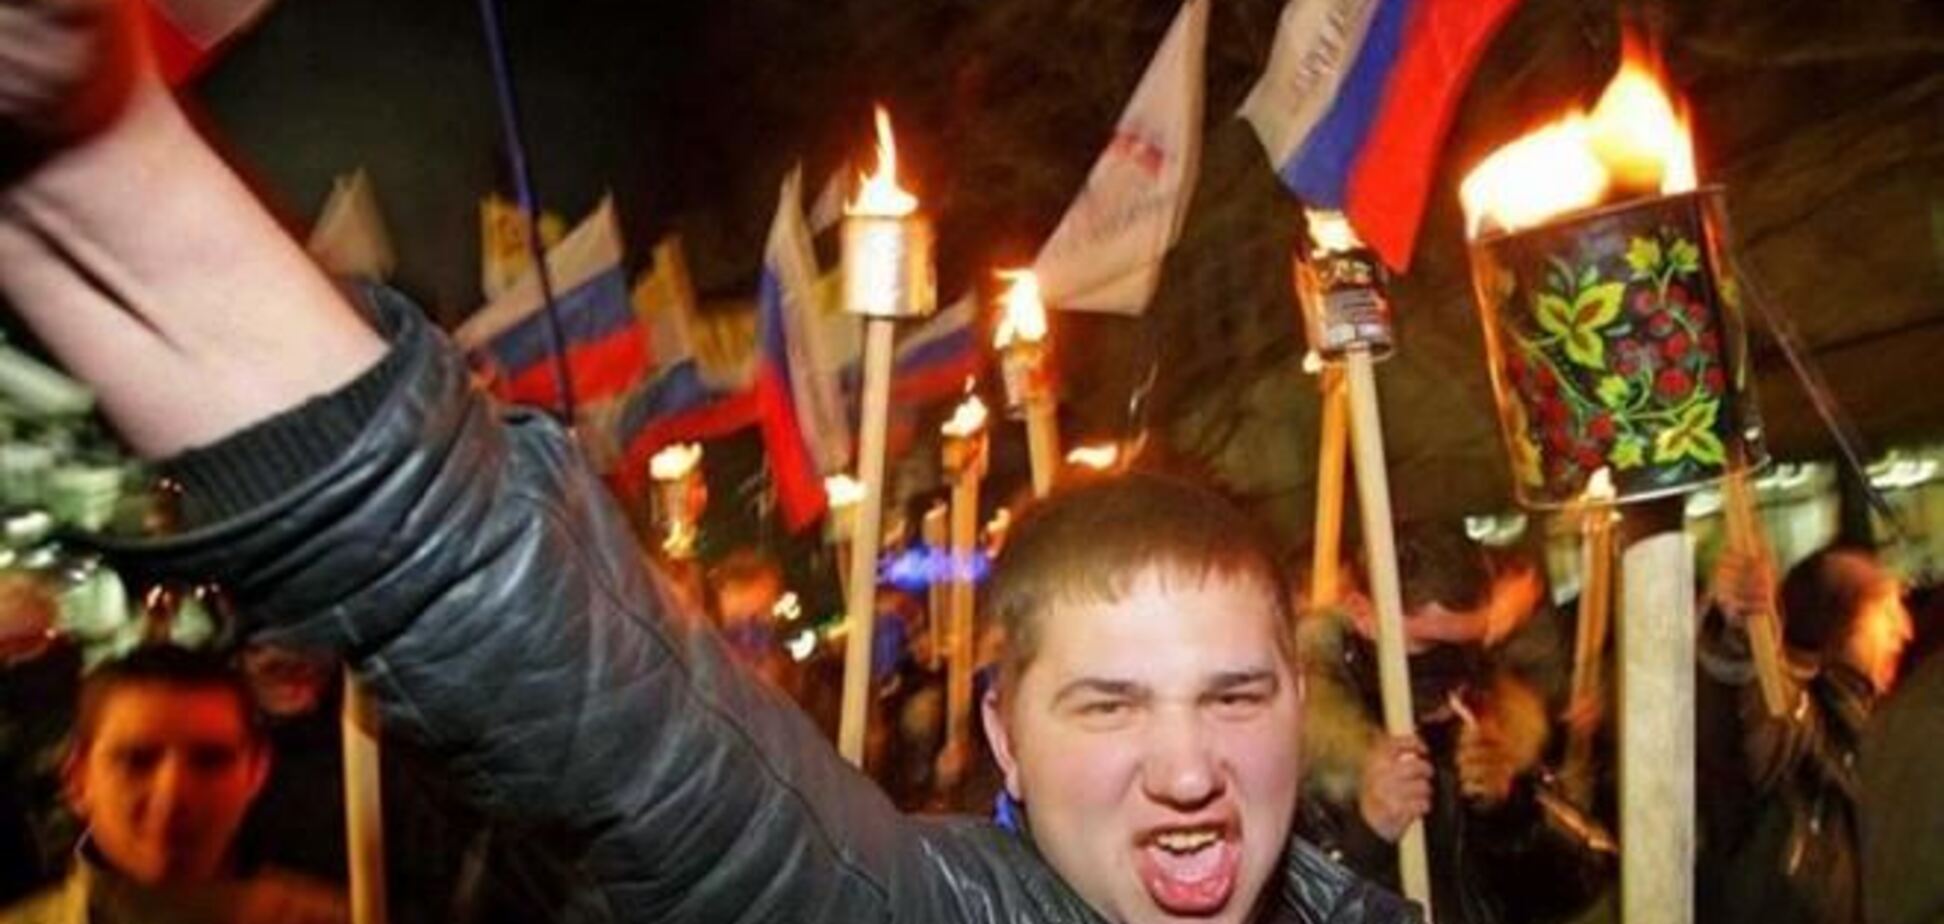 Російський шовінізм загрожує національним меншинам в Криму - експерт